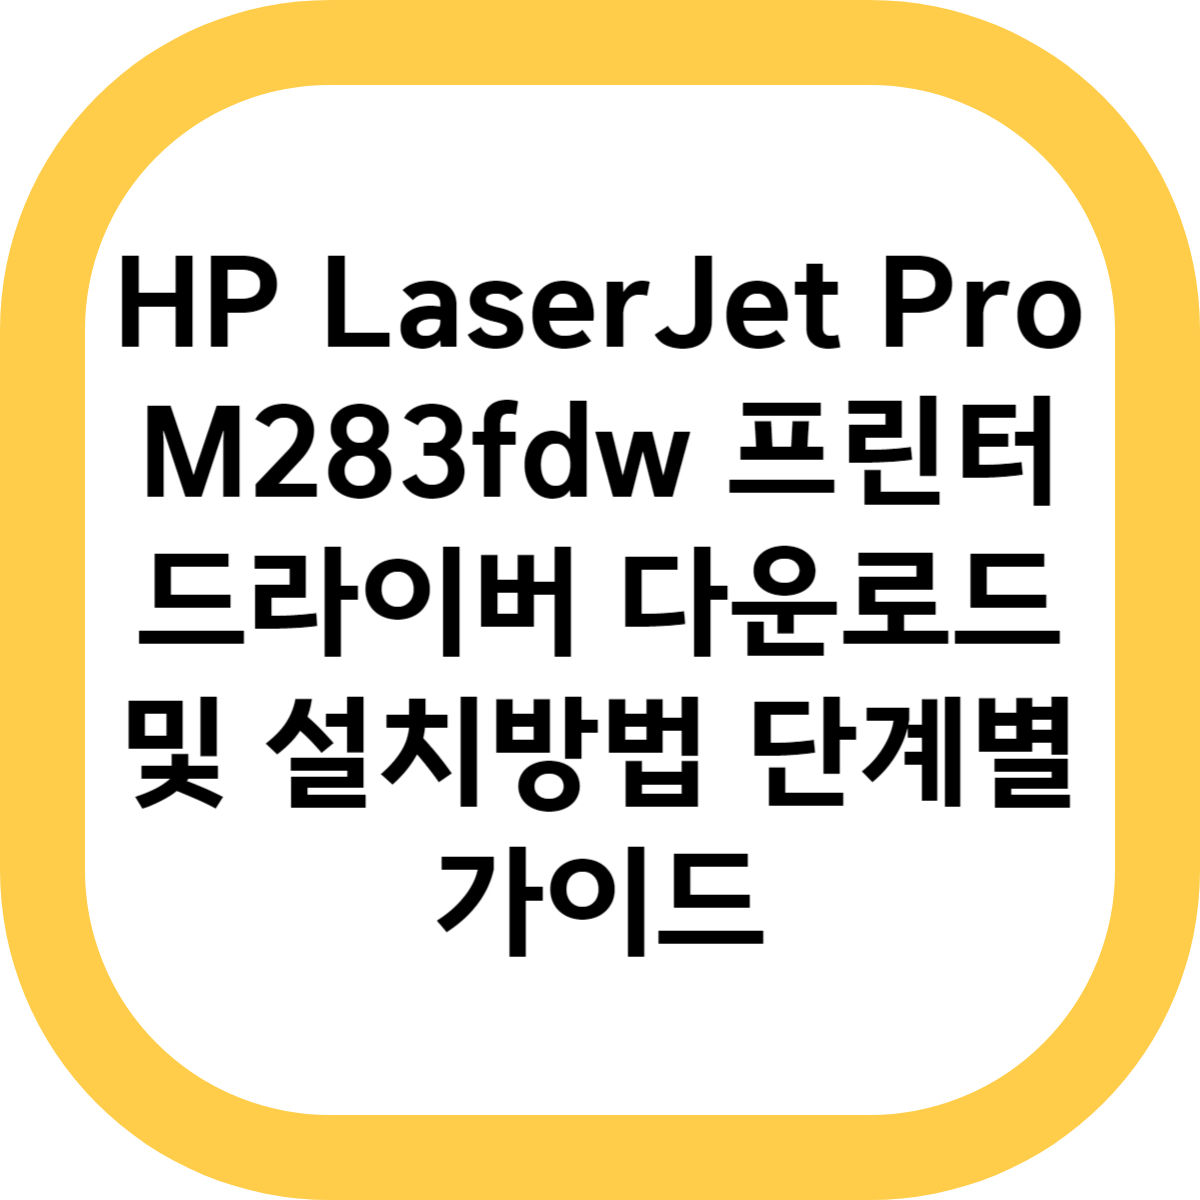 HP LaserJet Pro M283fdw 프린터 드라이버 다운로드 및 설치방법 단계별 가이드